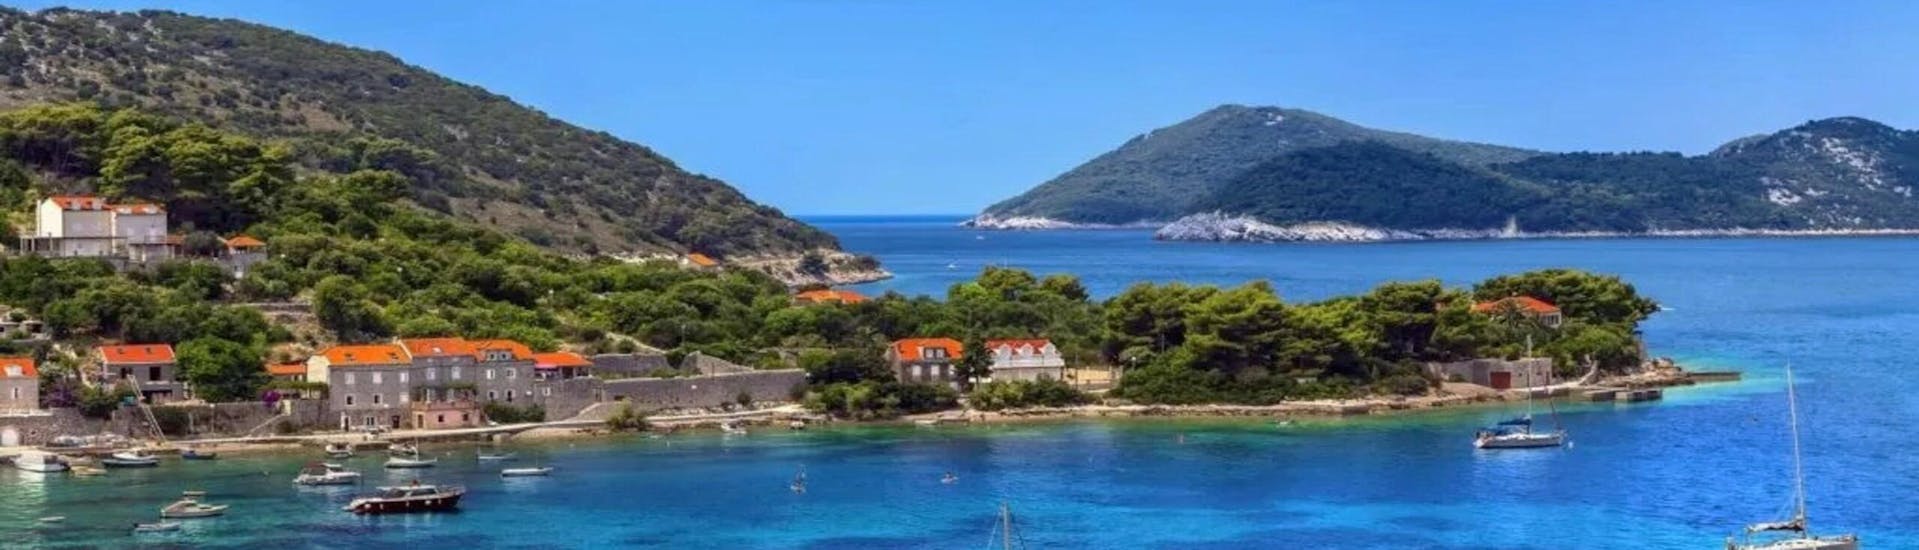 Hier ist eine mögliche Aussicht, die man während einer Tour mit Karuzo Boat Tours Dubrovnik haben könnte.